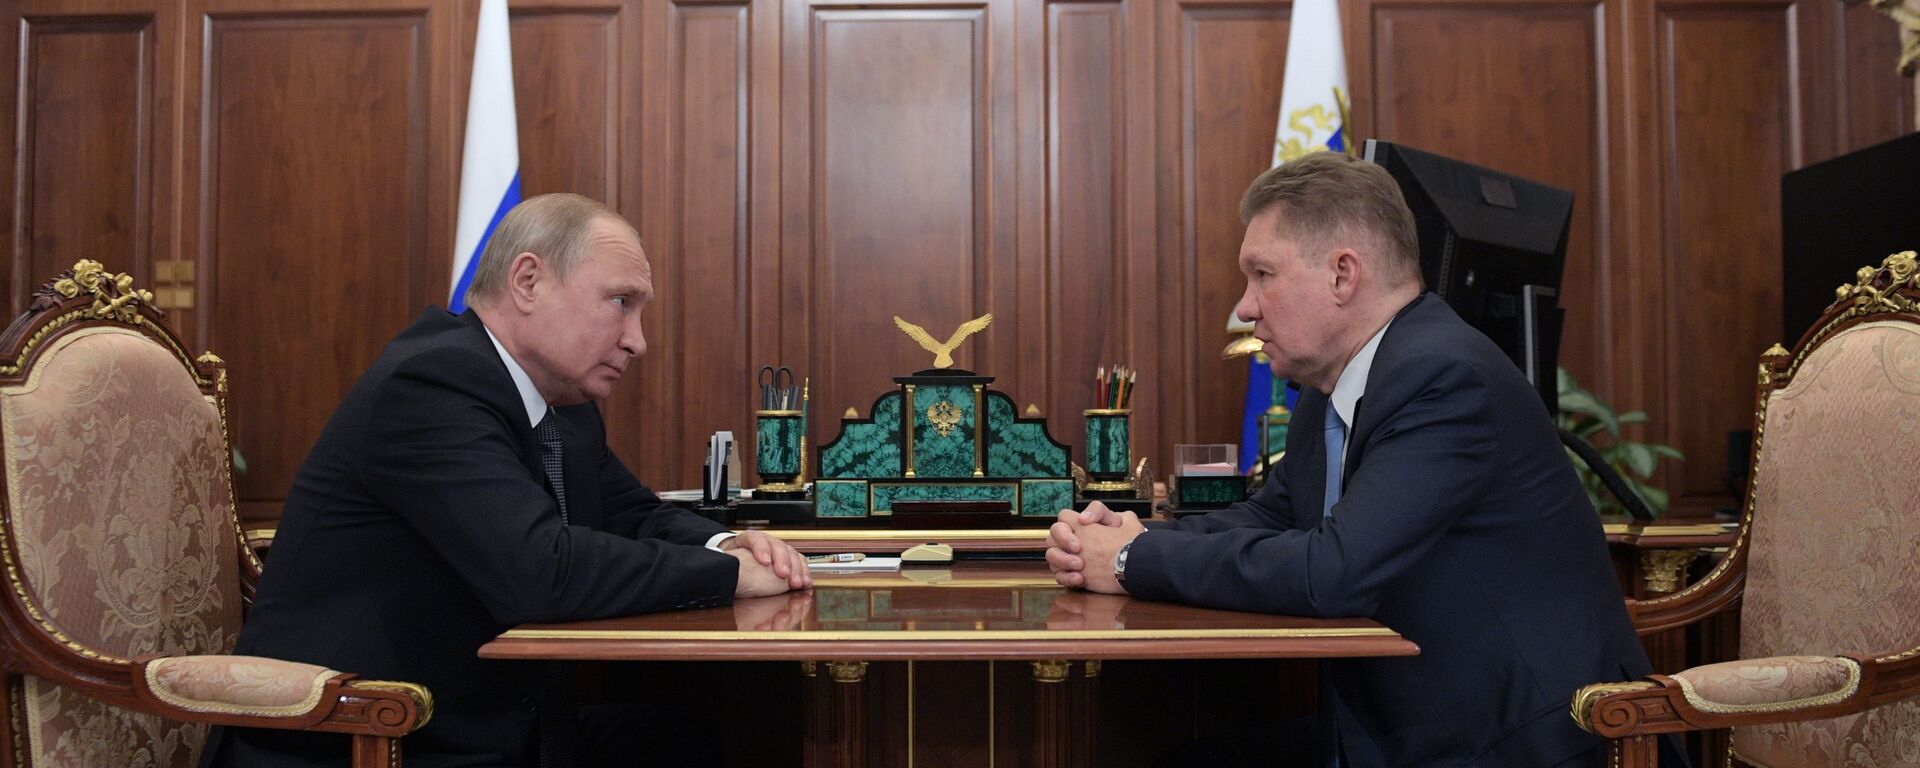 Krievijas prezidenta Vladimira Putina un Gazprom vadītāja Alekseja Millera tikšanās  - Sputnik Latvija, 1920, 31.12.2021